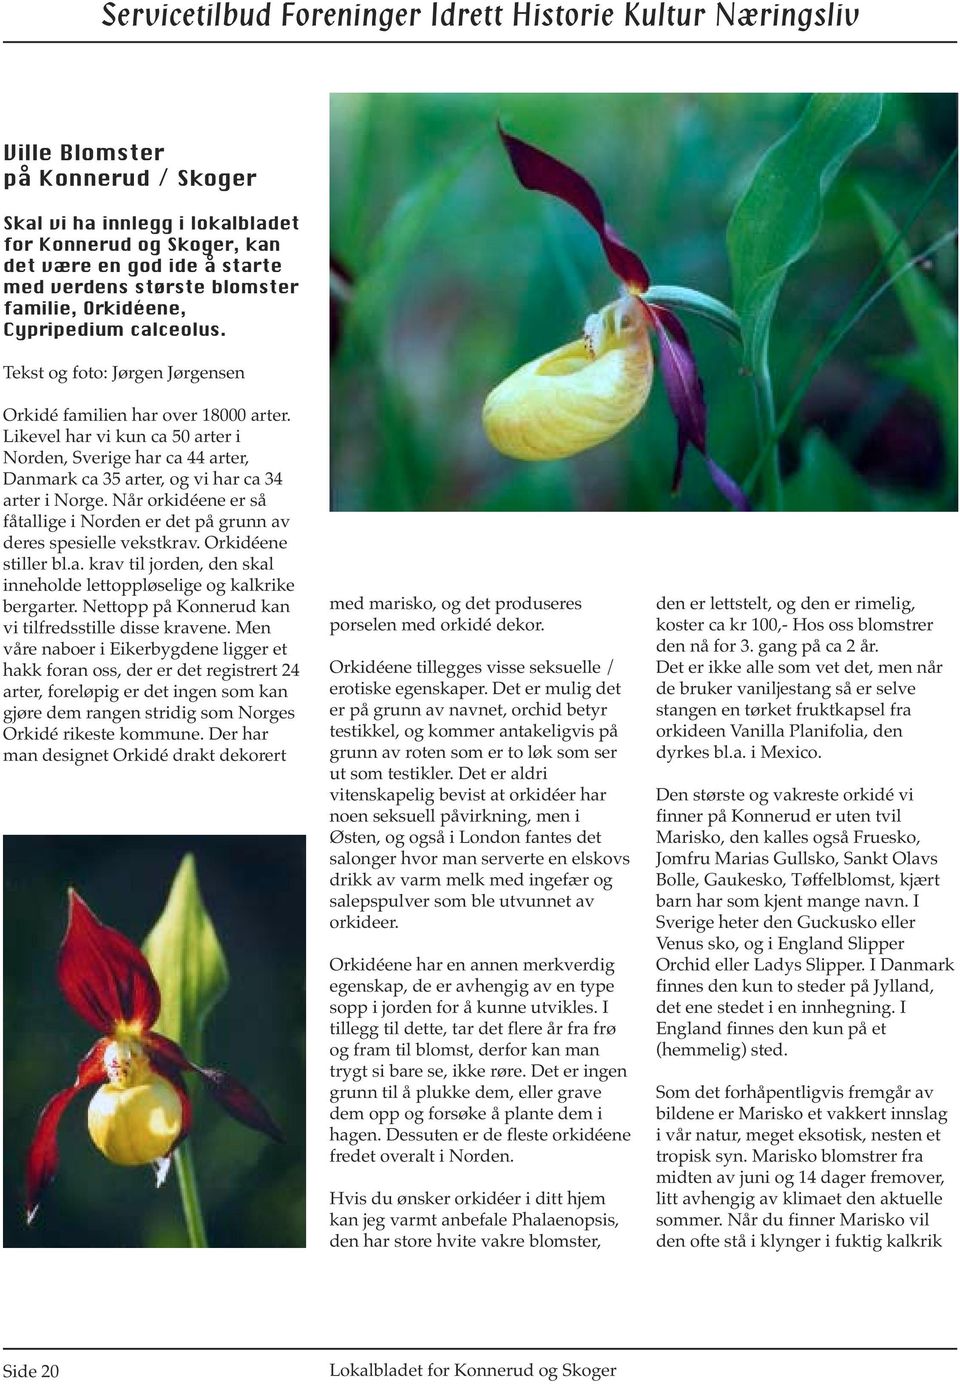 Når orkidéene er så fåtallige i Norden er det på grunn av deres spesielle vekstkrav. Orkidéene stiller bl.a. krav til jorden, den skal inneholde lettoppløselige og kalkrike bergarter.